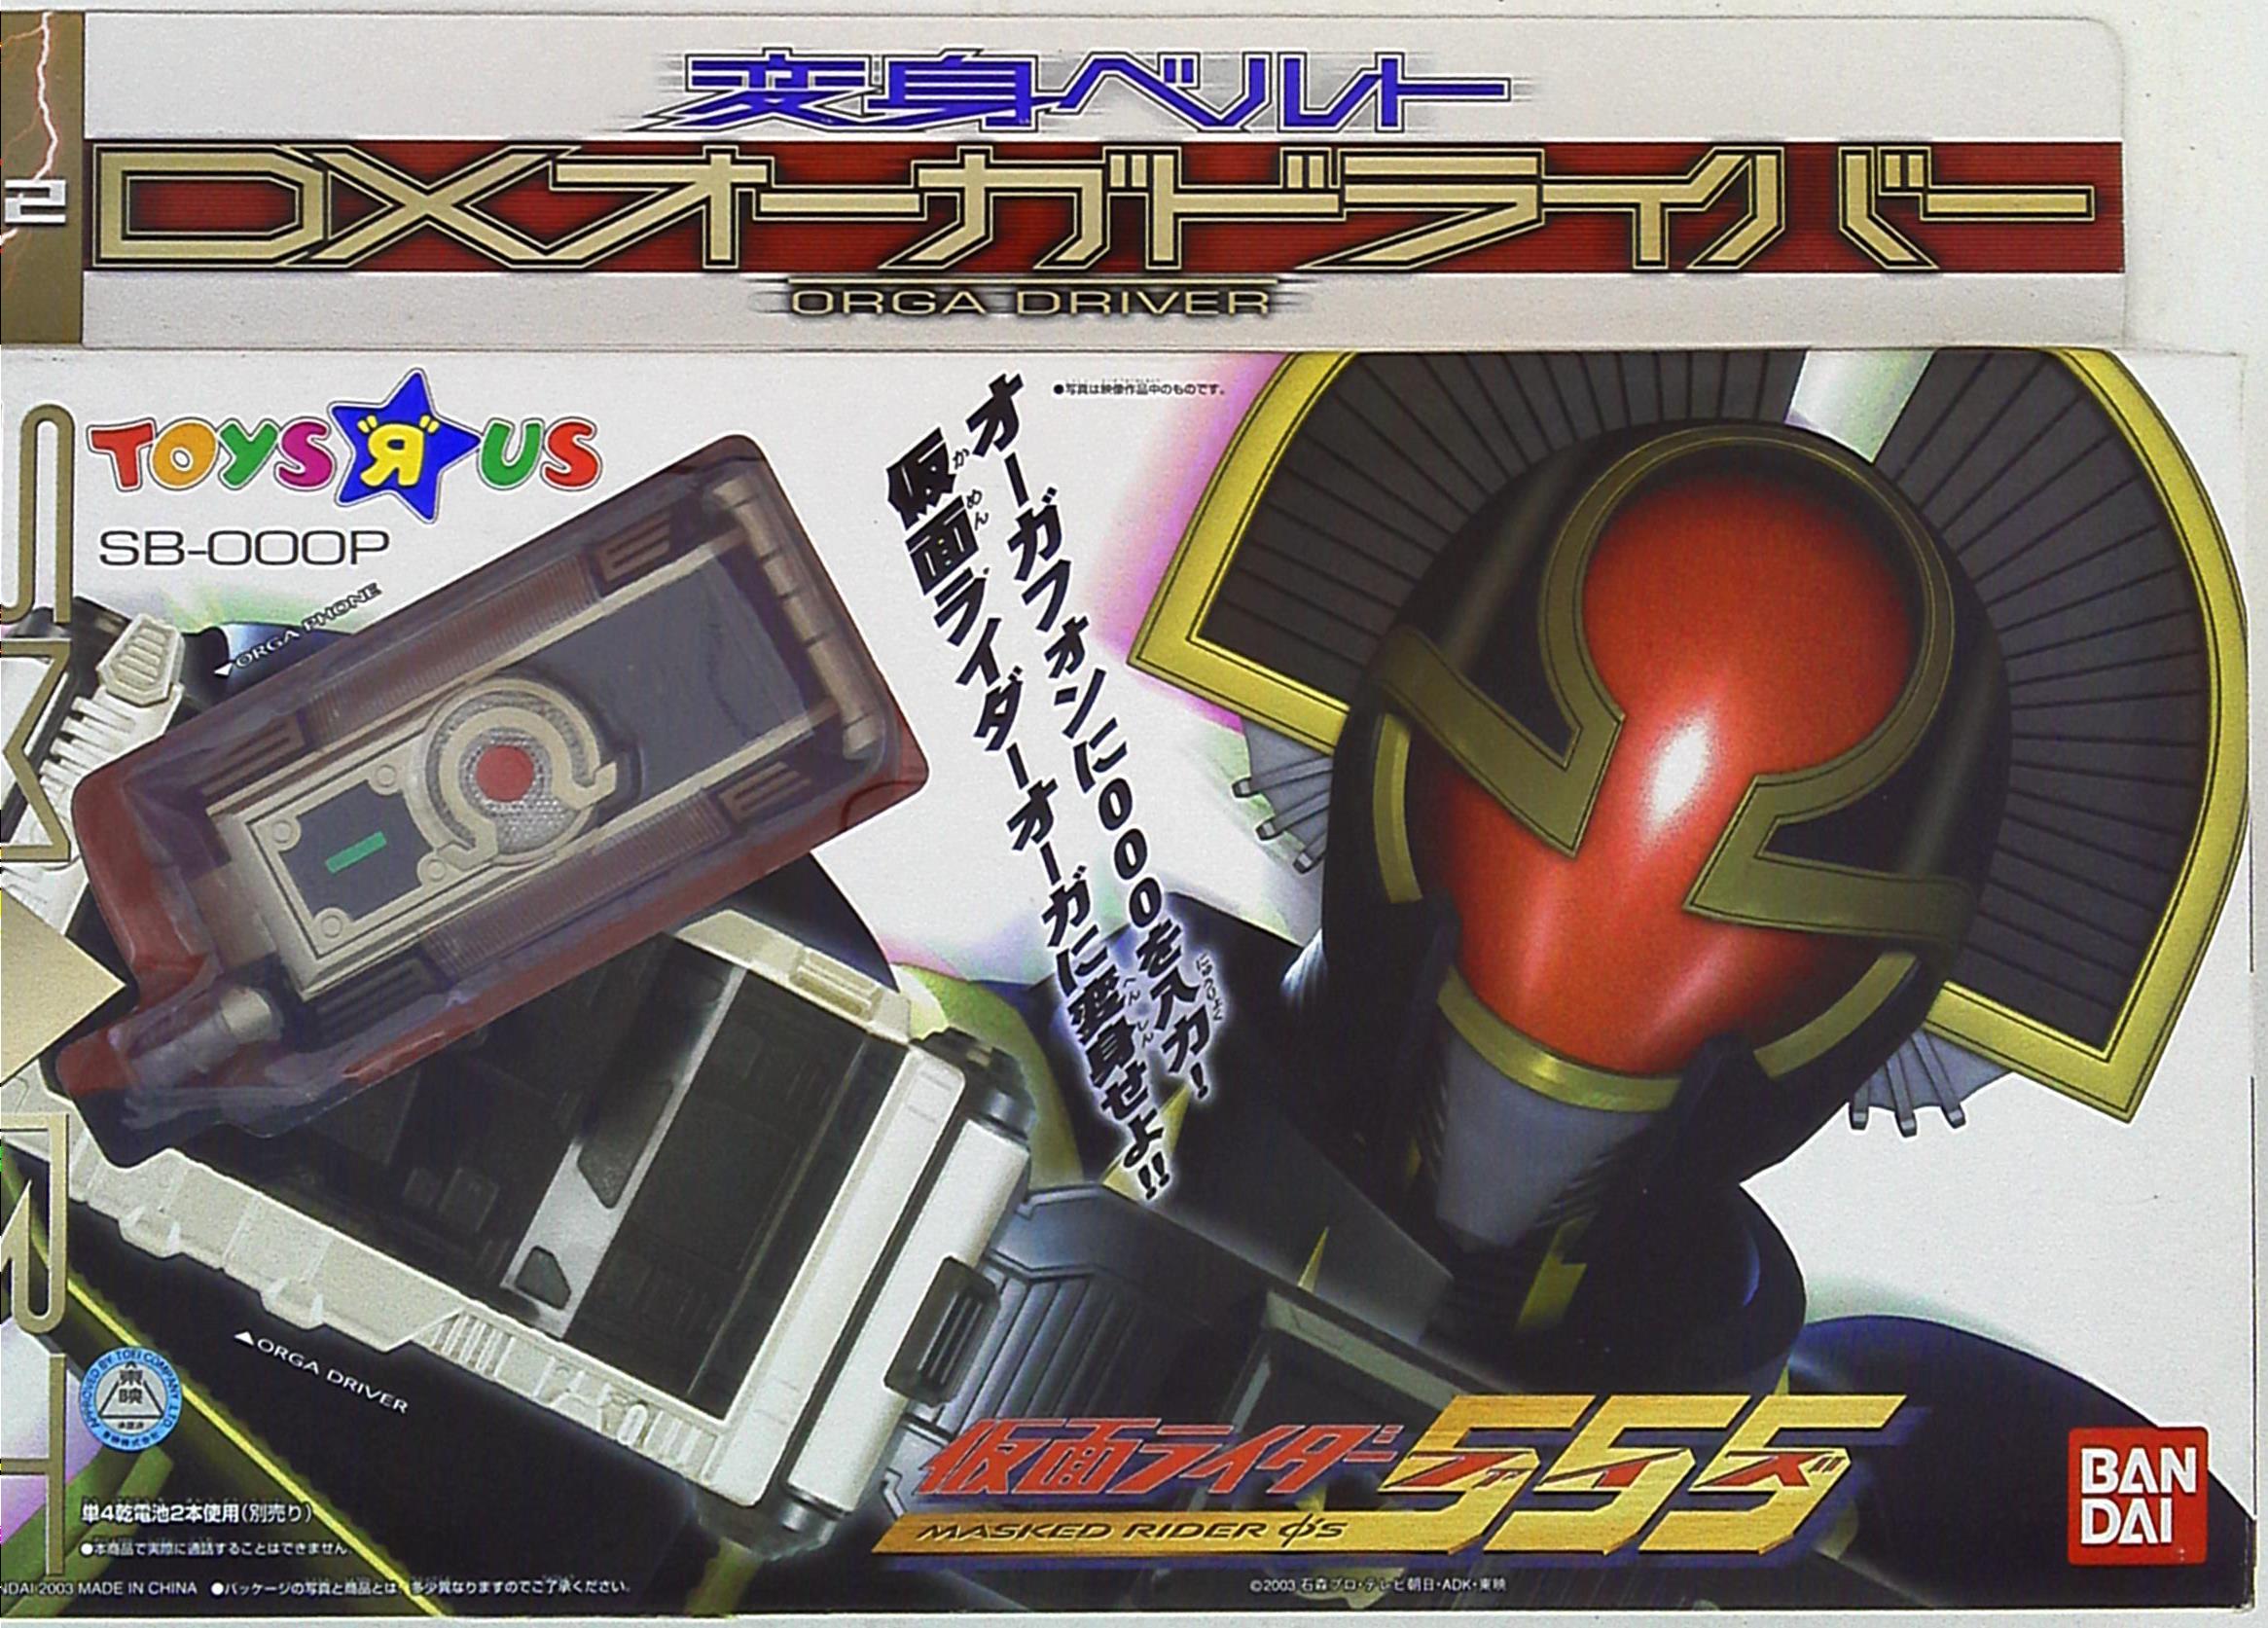 Bandai 555 Narikiri Series Kamen Rider 555 Faiz Dx Auger Driver Toys R Us Limited 12 Mandarake Online Shop